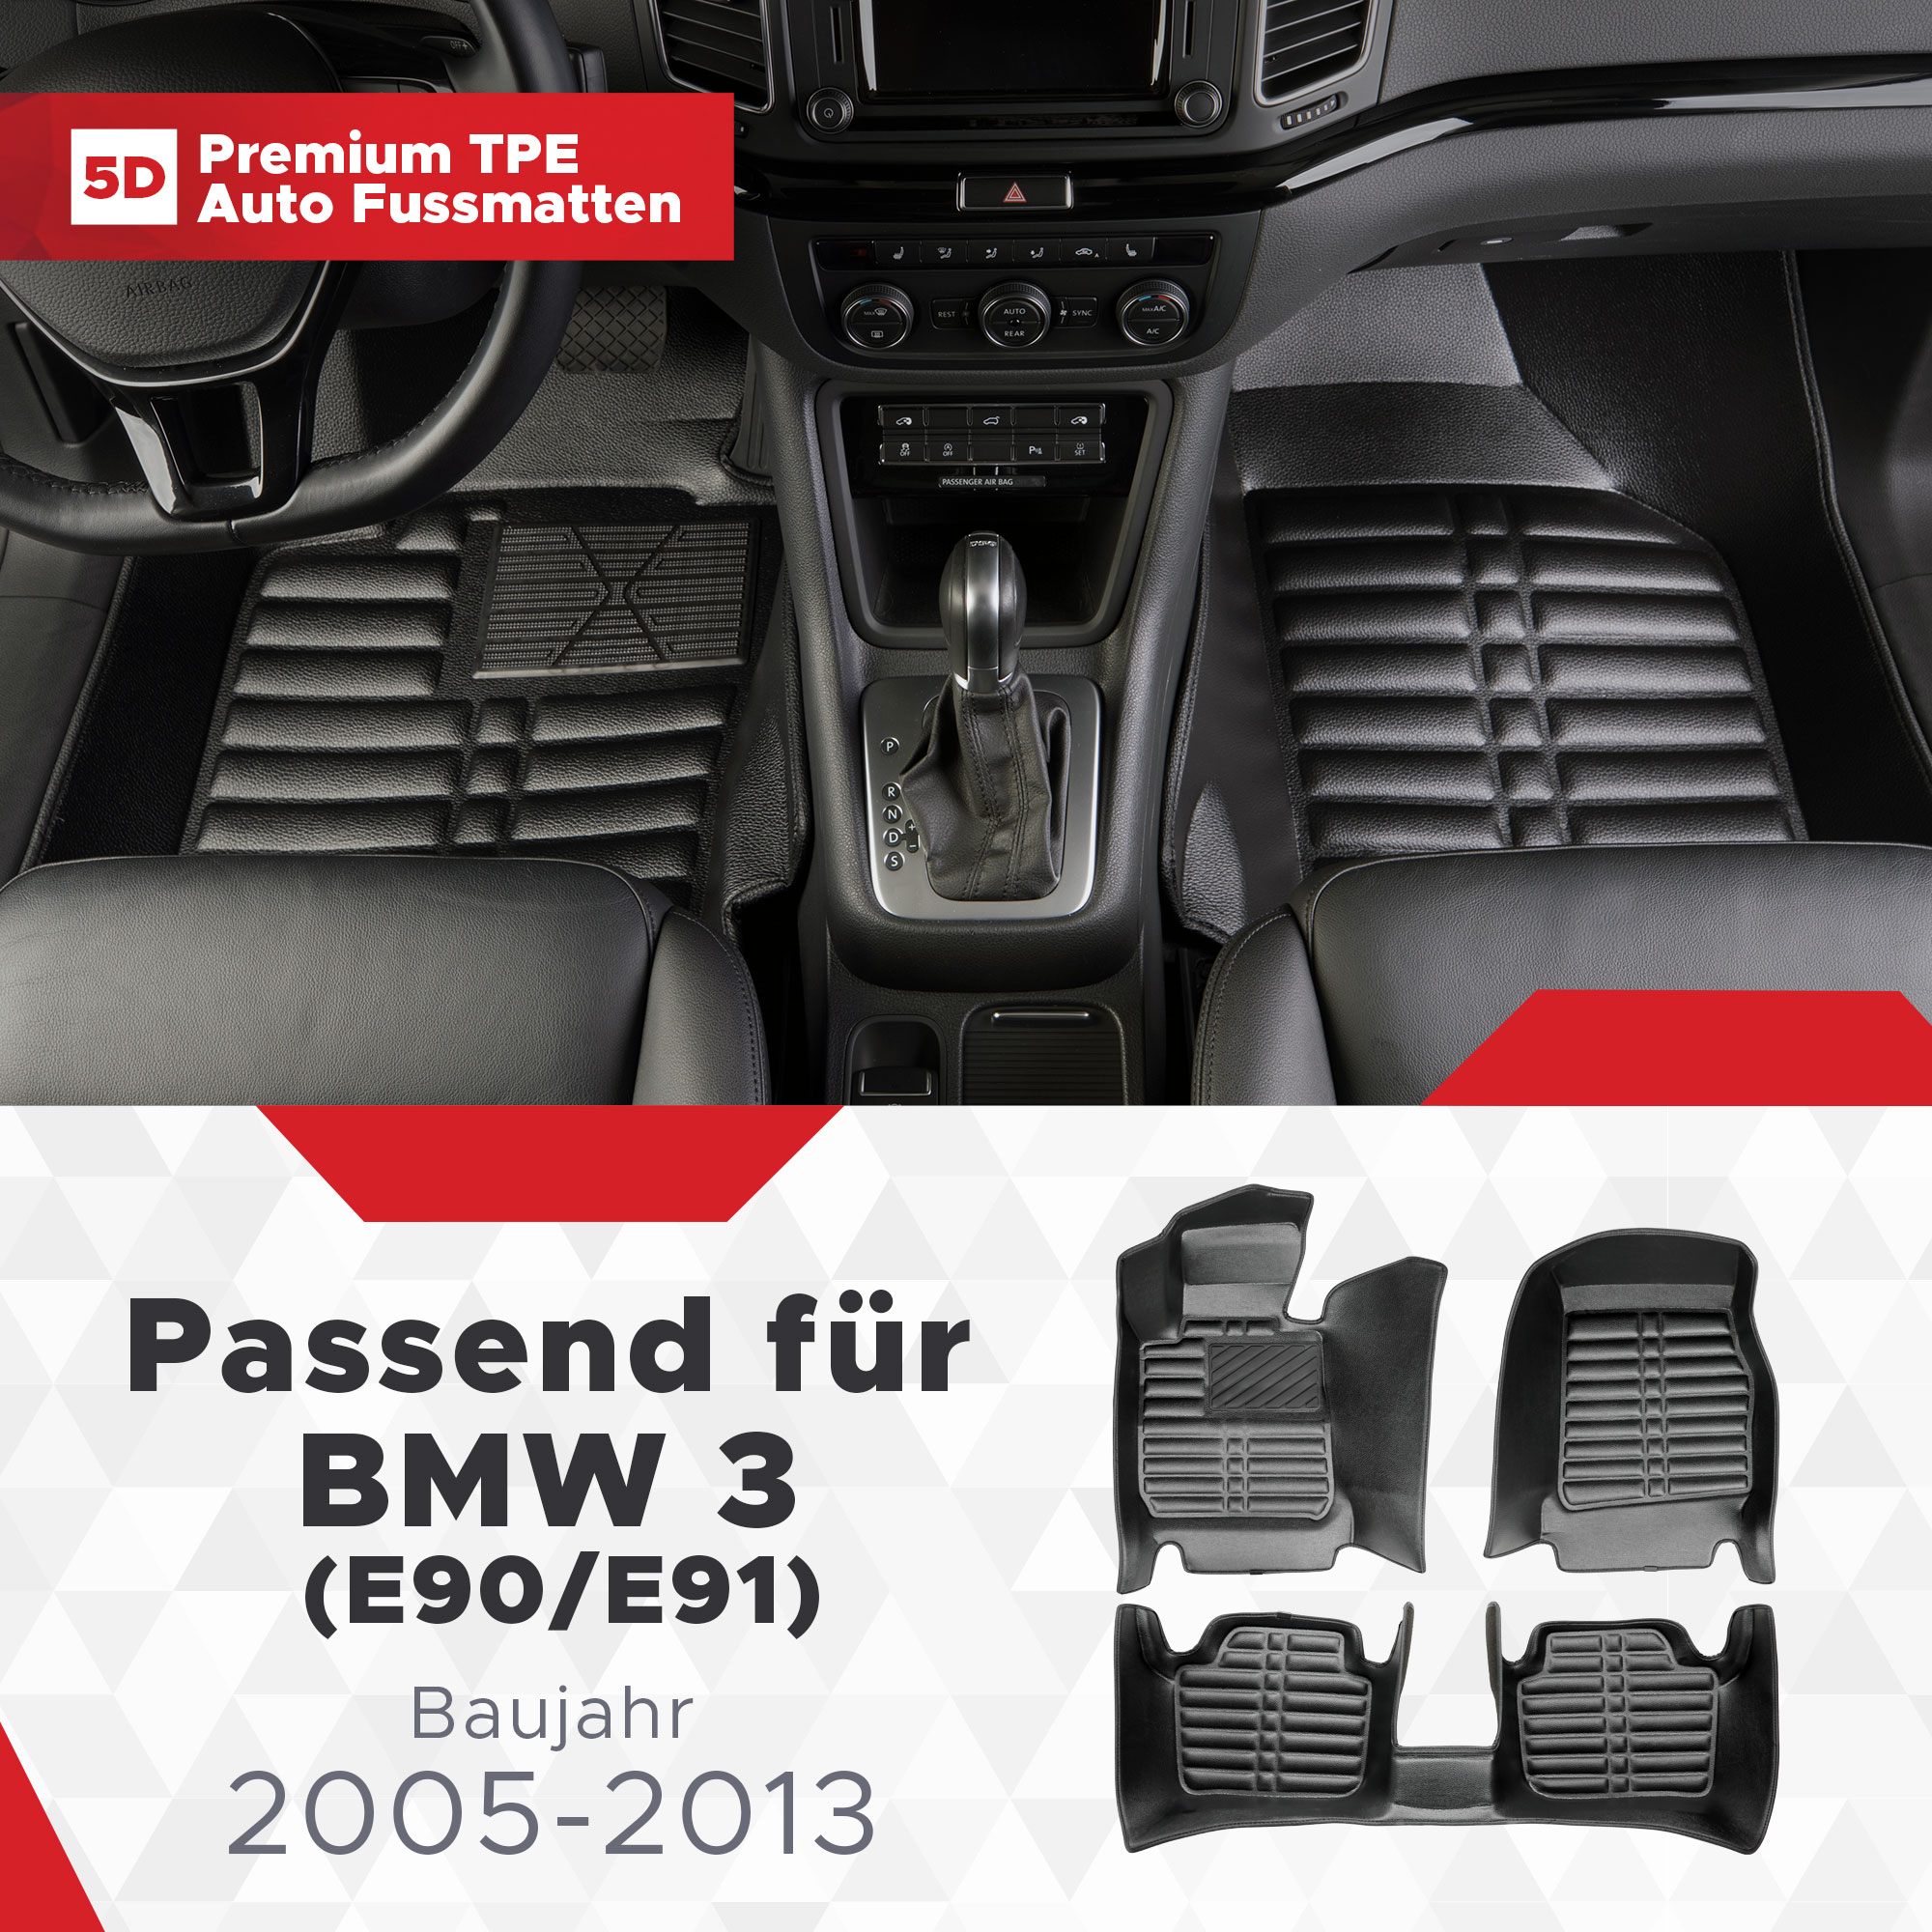 Fussmatten (E90/E91) BMW 5D 3 2005-2013 Bj TPE